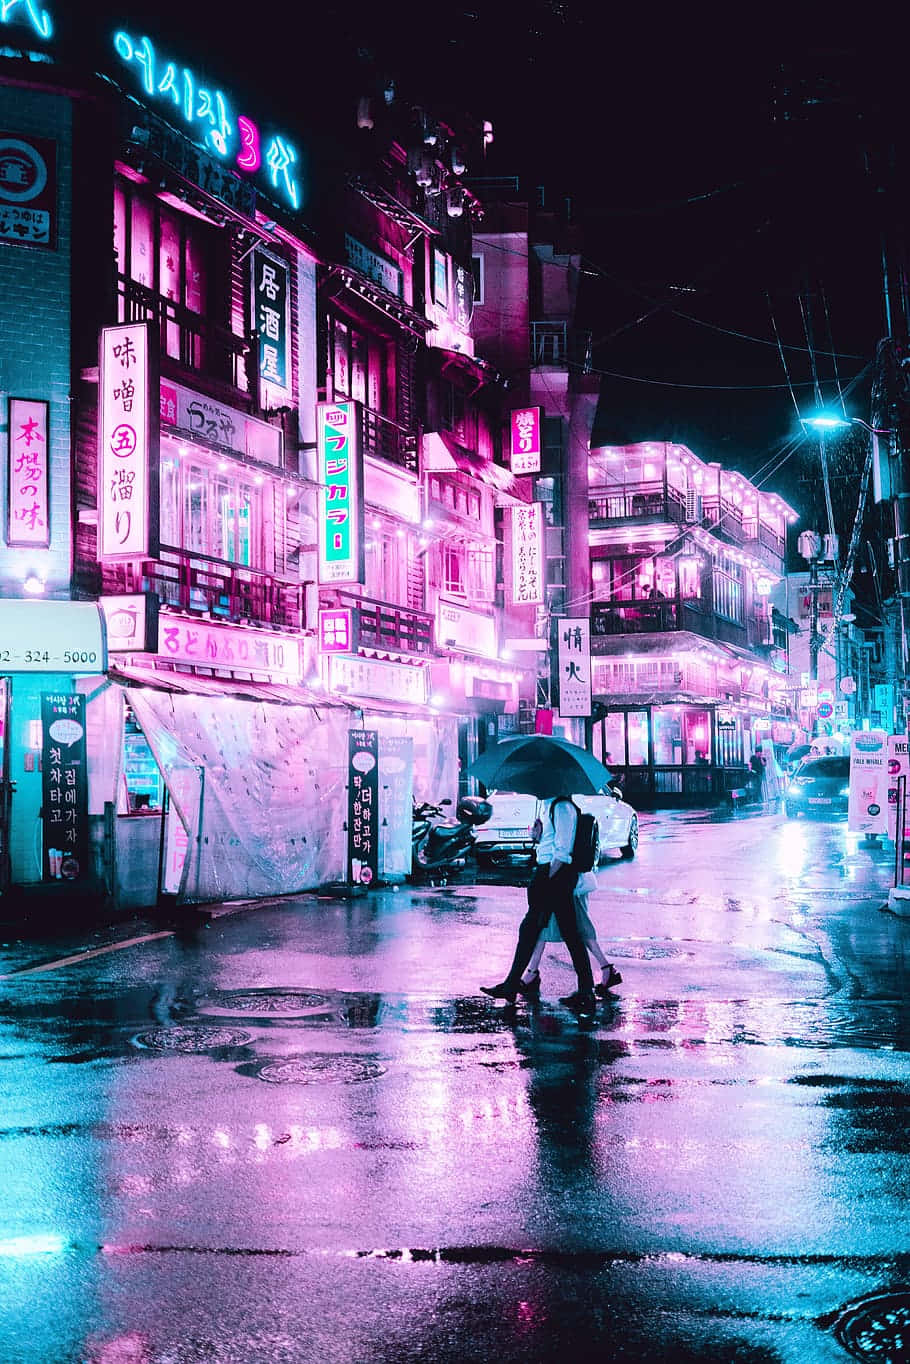 Taen Virtuell Promenad Genom De Pastellfärgade Neon-gatorna I Denna Futuristiska Stad. Wallpaper